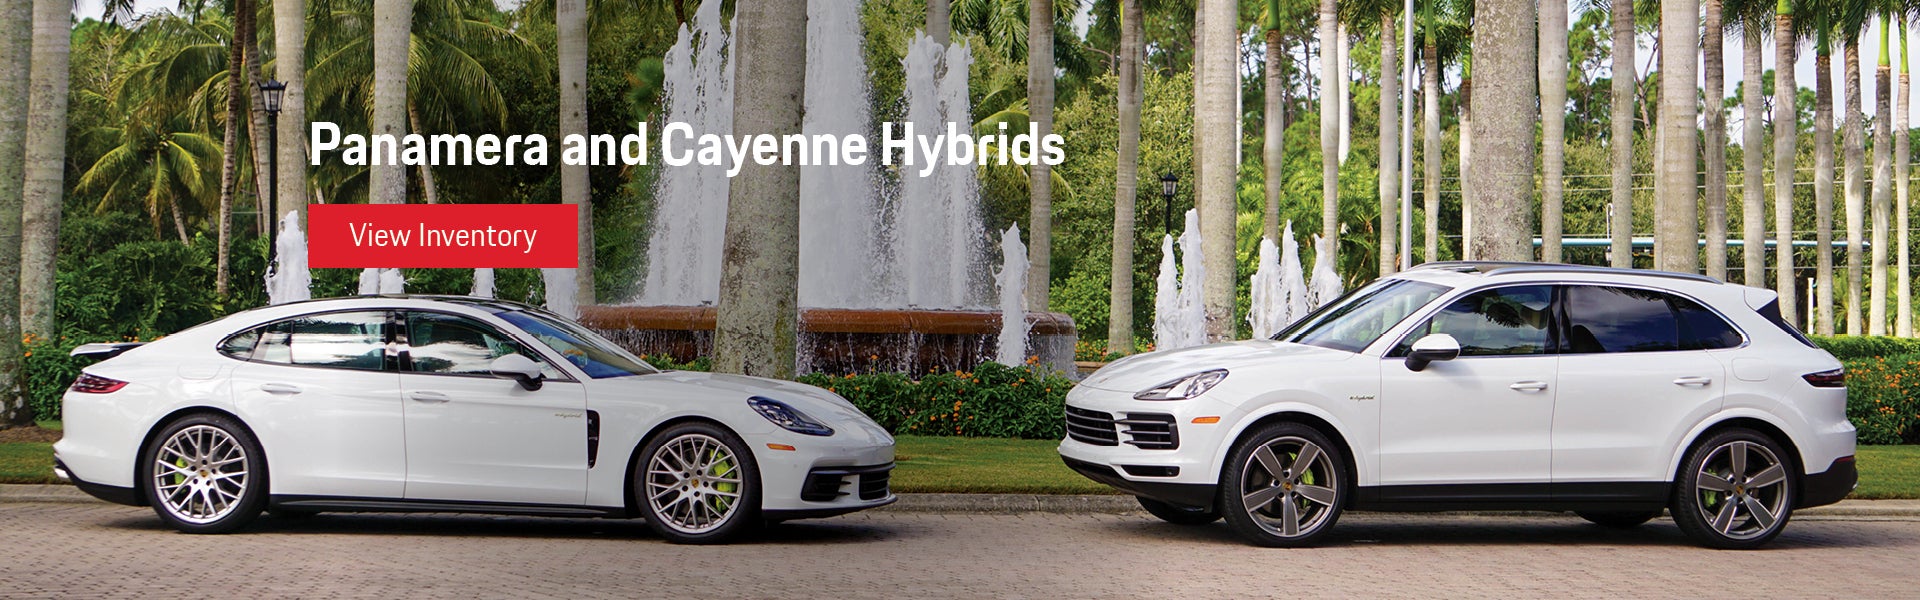 Porsche Panamera and Cayenne Hybrids